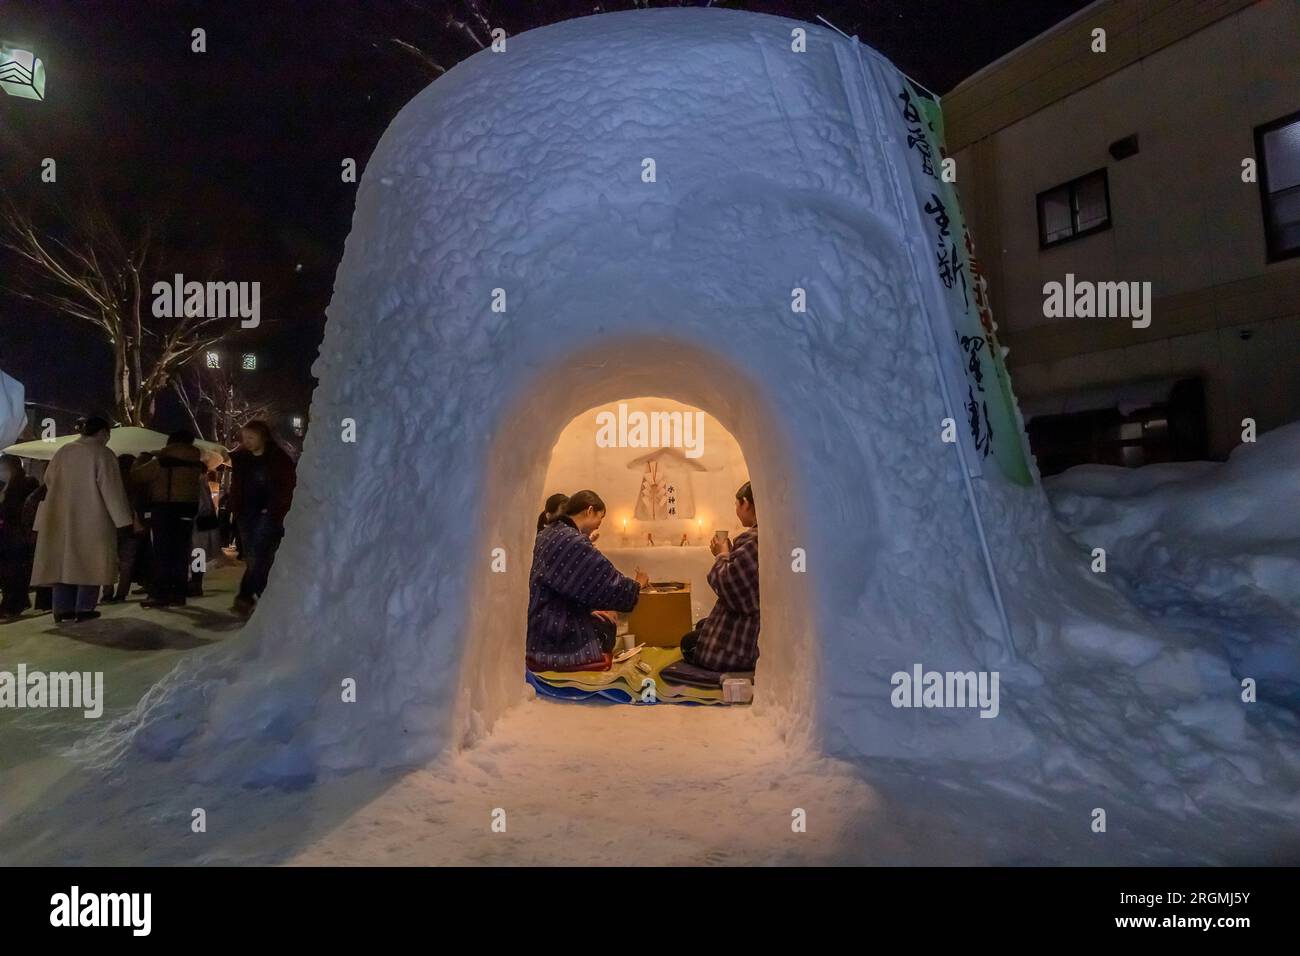 Kamakura, festival invernale locale, cupola della neve (igloo), santuario del dio dell'acqua, città di Yokote, Akita, Tohoku, Giappone, Asia orientale, Asia Foto Stock